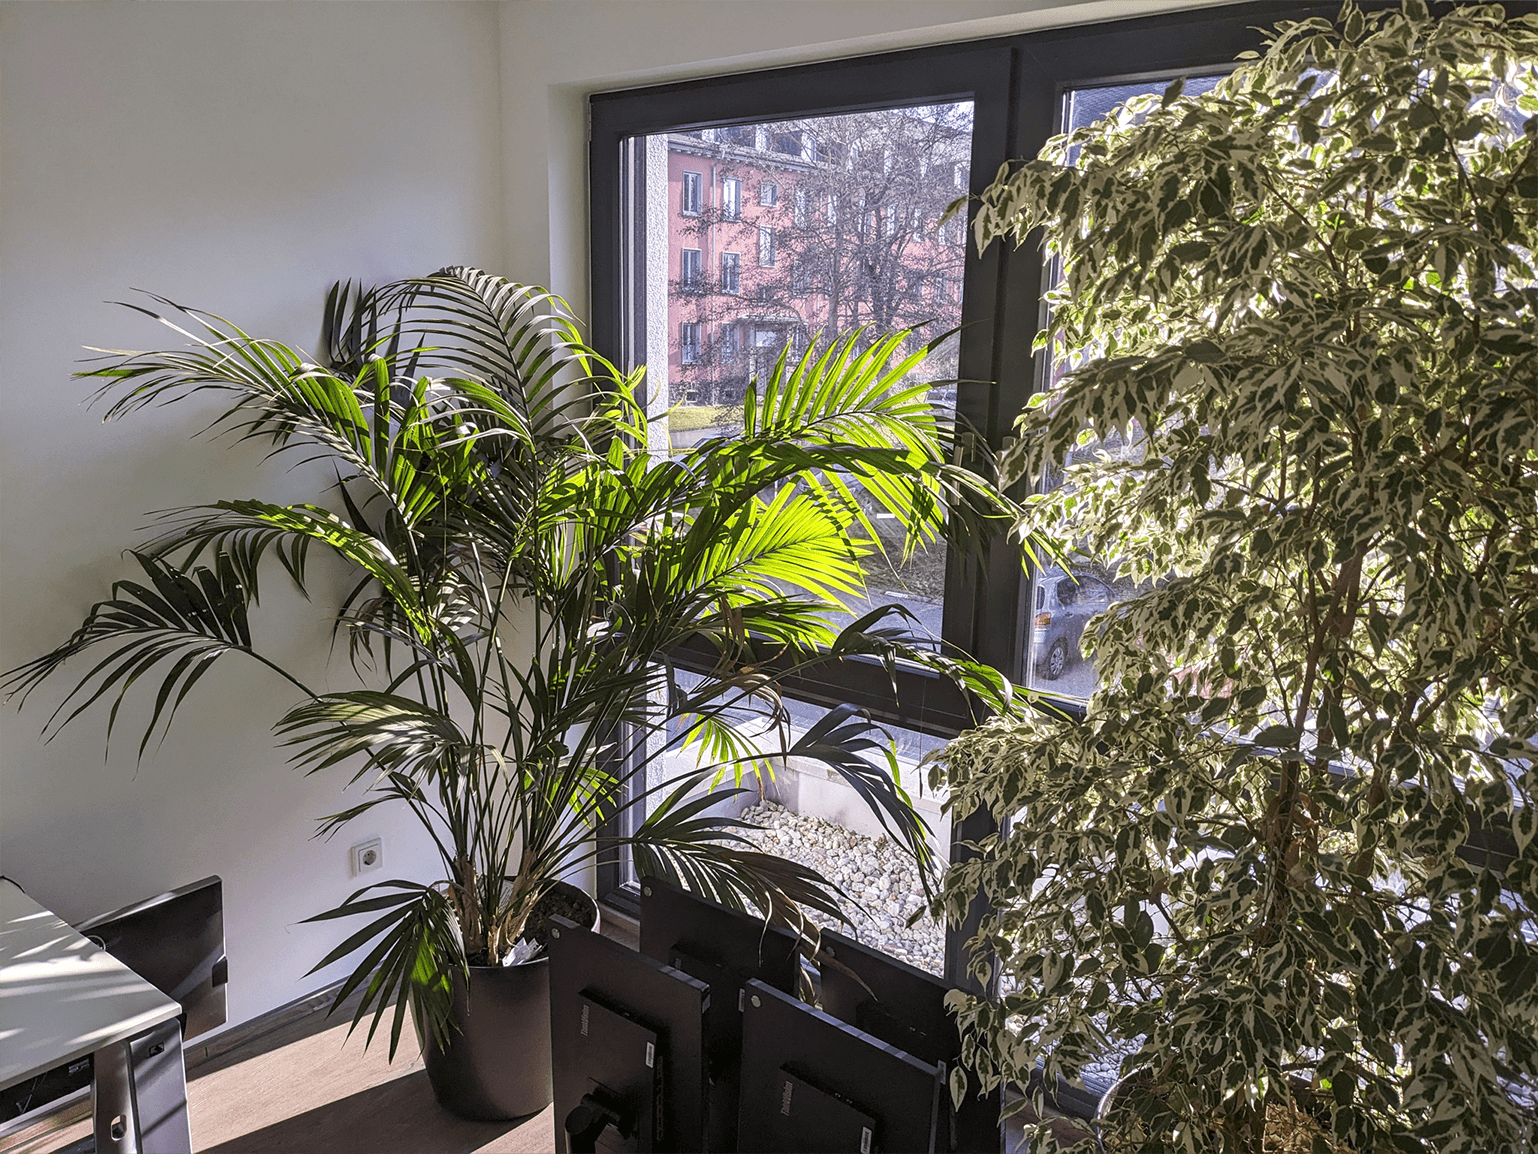 Unsere Büros sind sonnig und sehr grün!